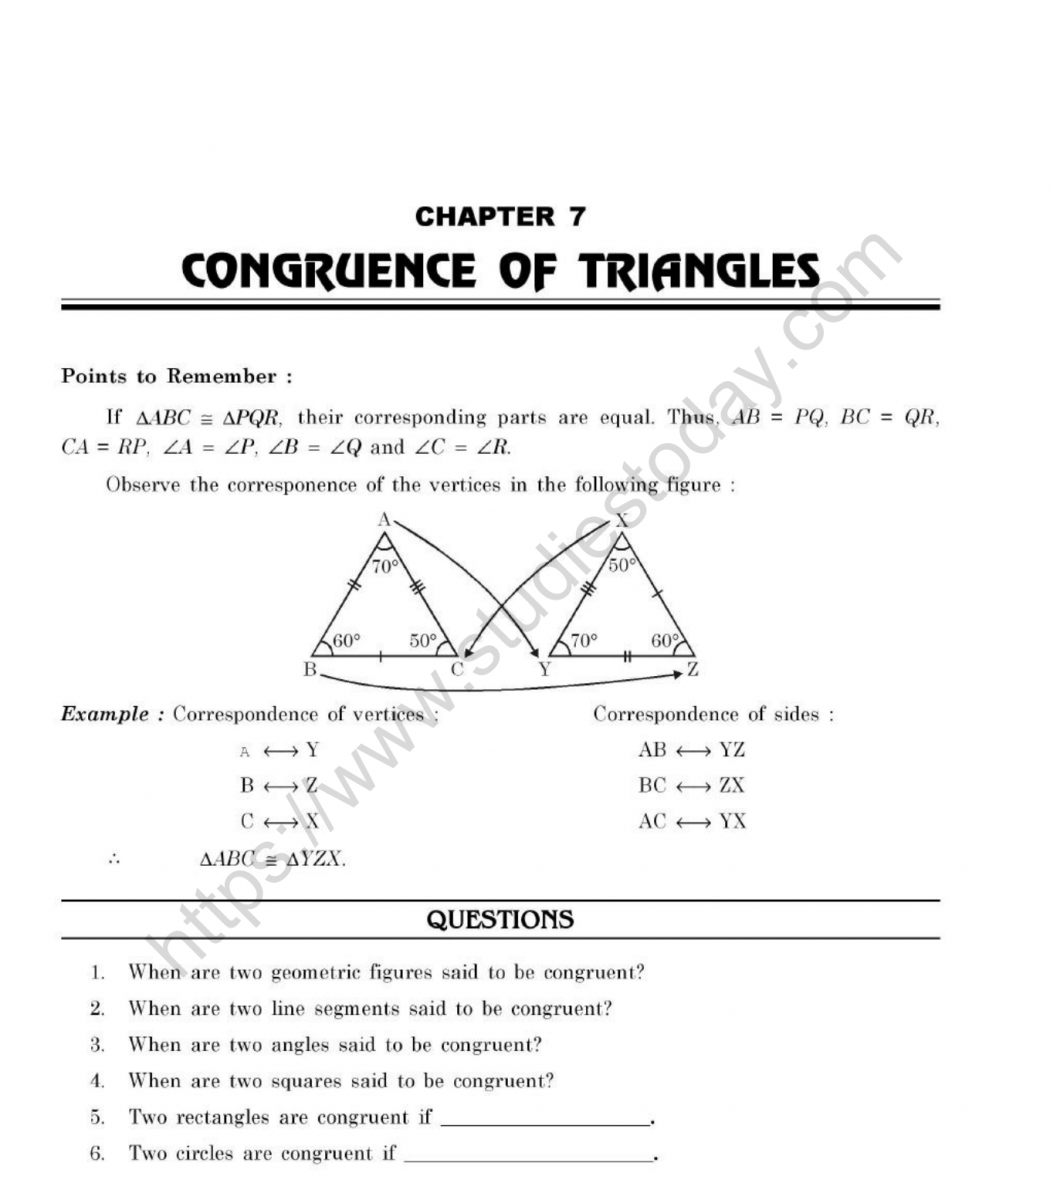 cbse-class-7-mental-maths-congruence-of-triangles-worksheet